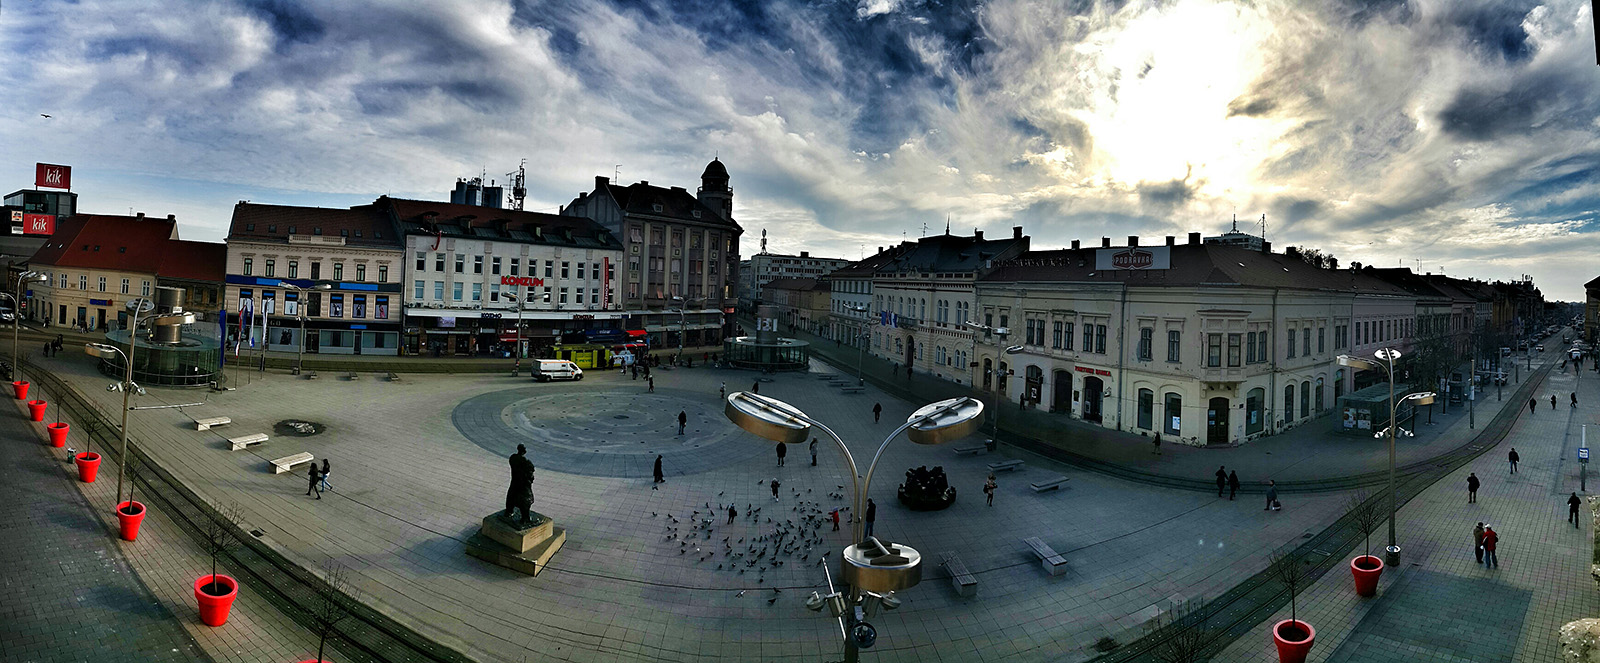 Trg Ante Starevia

Foto: Igor Jandrok

Kljune rijei: trg ante starcevica oblaci hdr panorama 